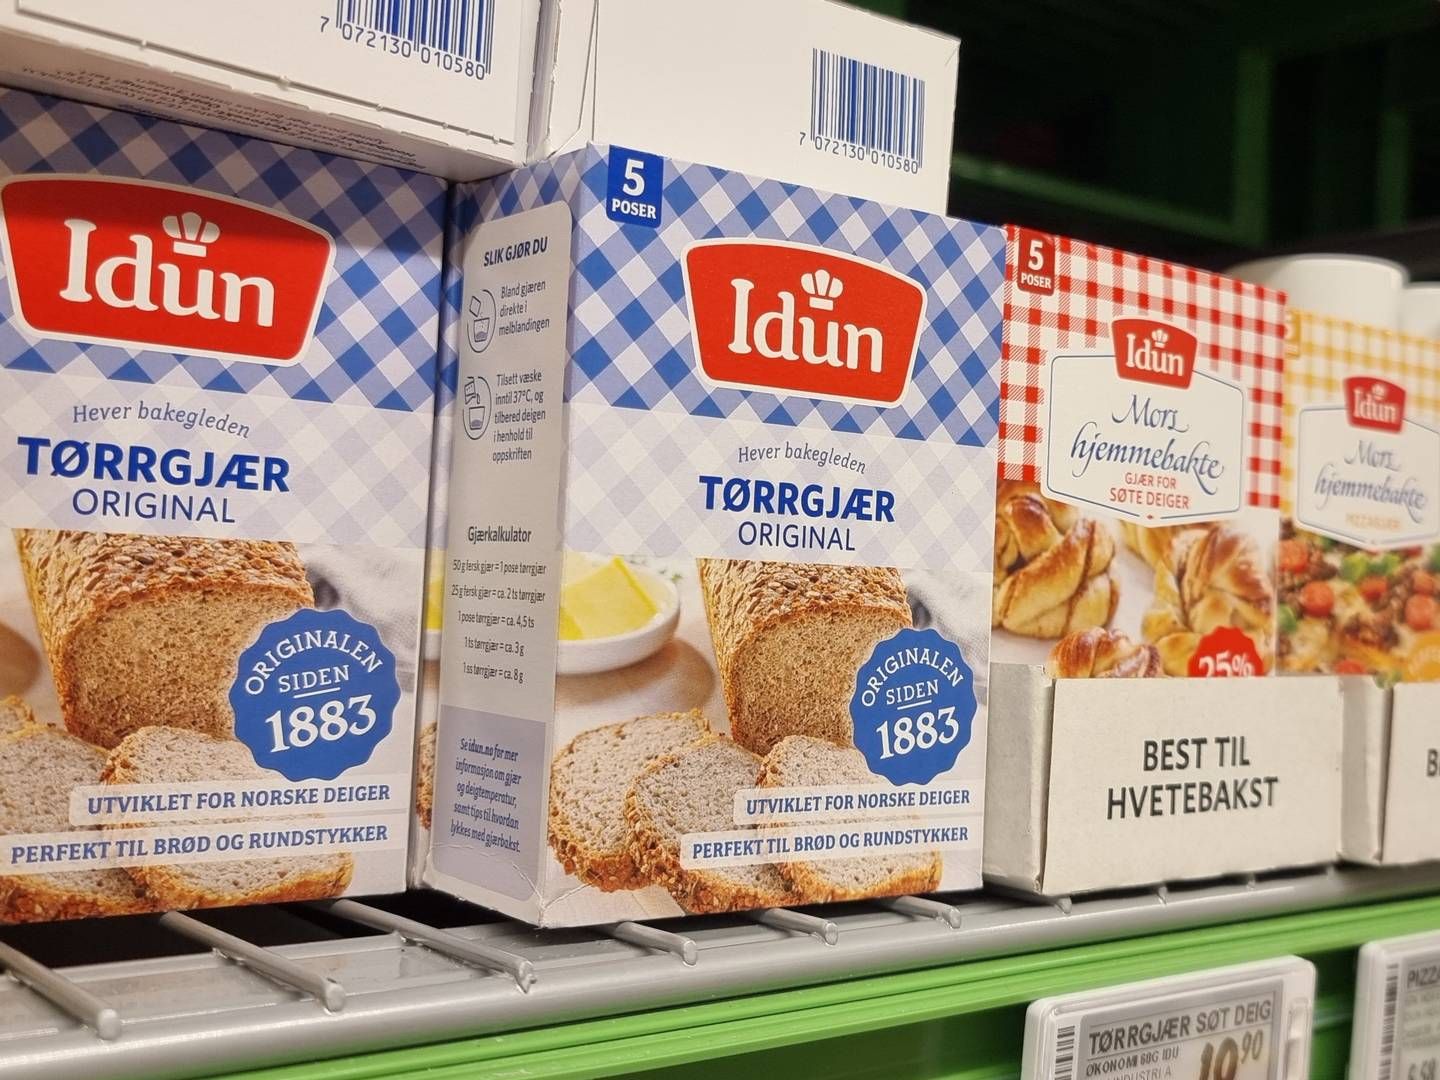 Idun Industri er produsent og leverandør av bake- og iskremingredienser. | Foto: Anders Hustveit Gerhardsen